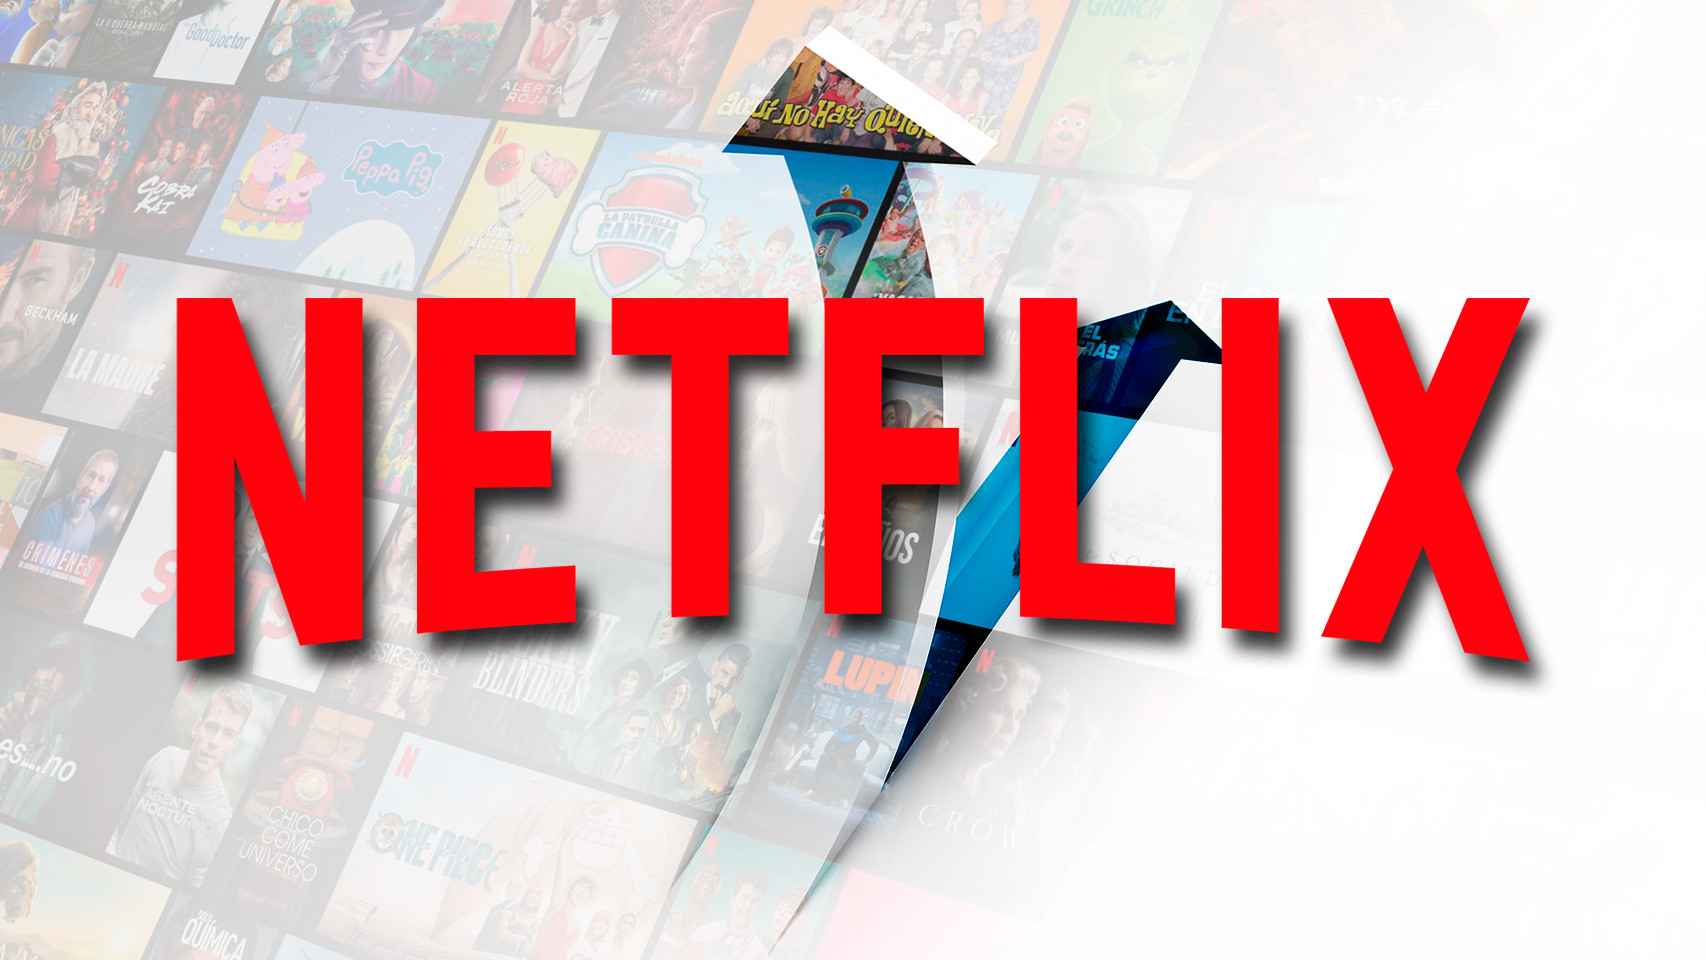 Netflix comunica a sus accionistas que subirá el precio de sus suscripciones